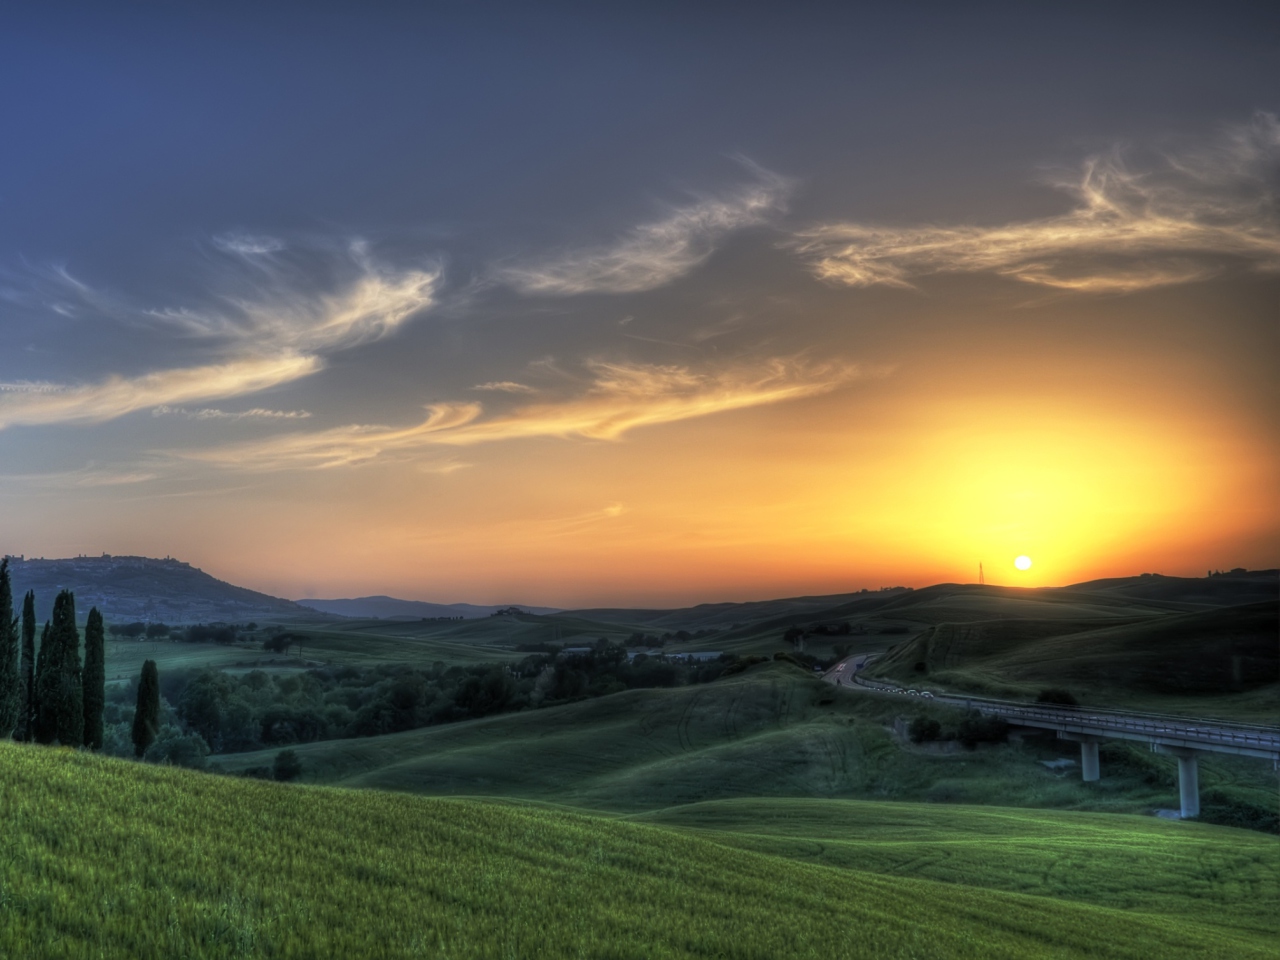 Sfondi Sunset In Tuscany 1280x960